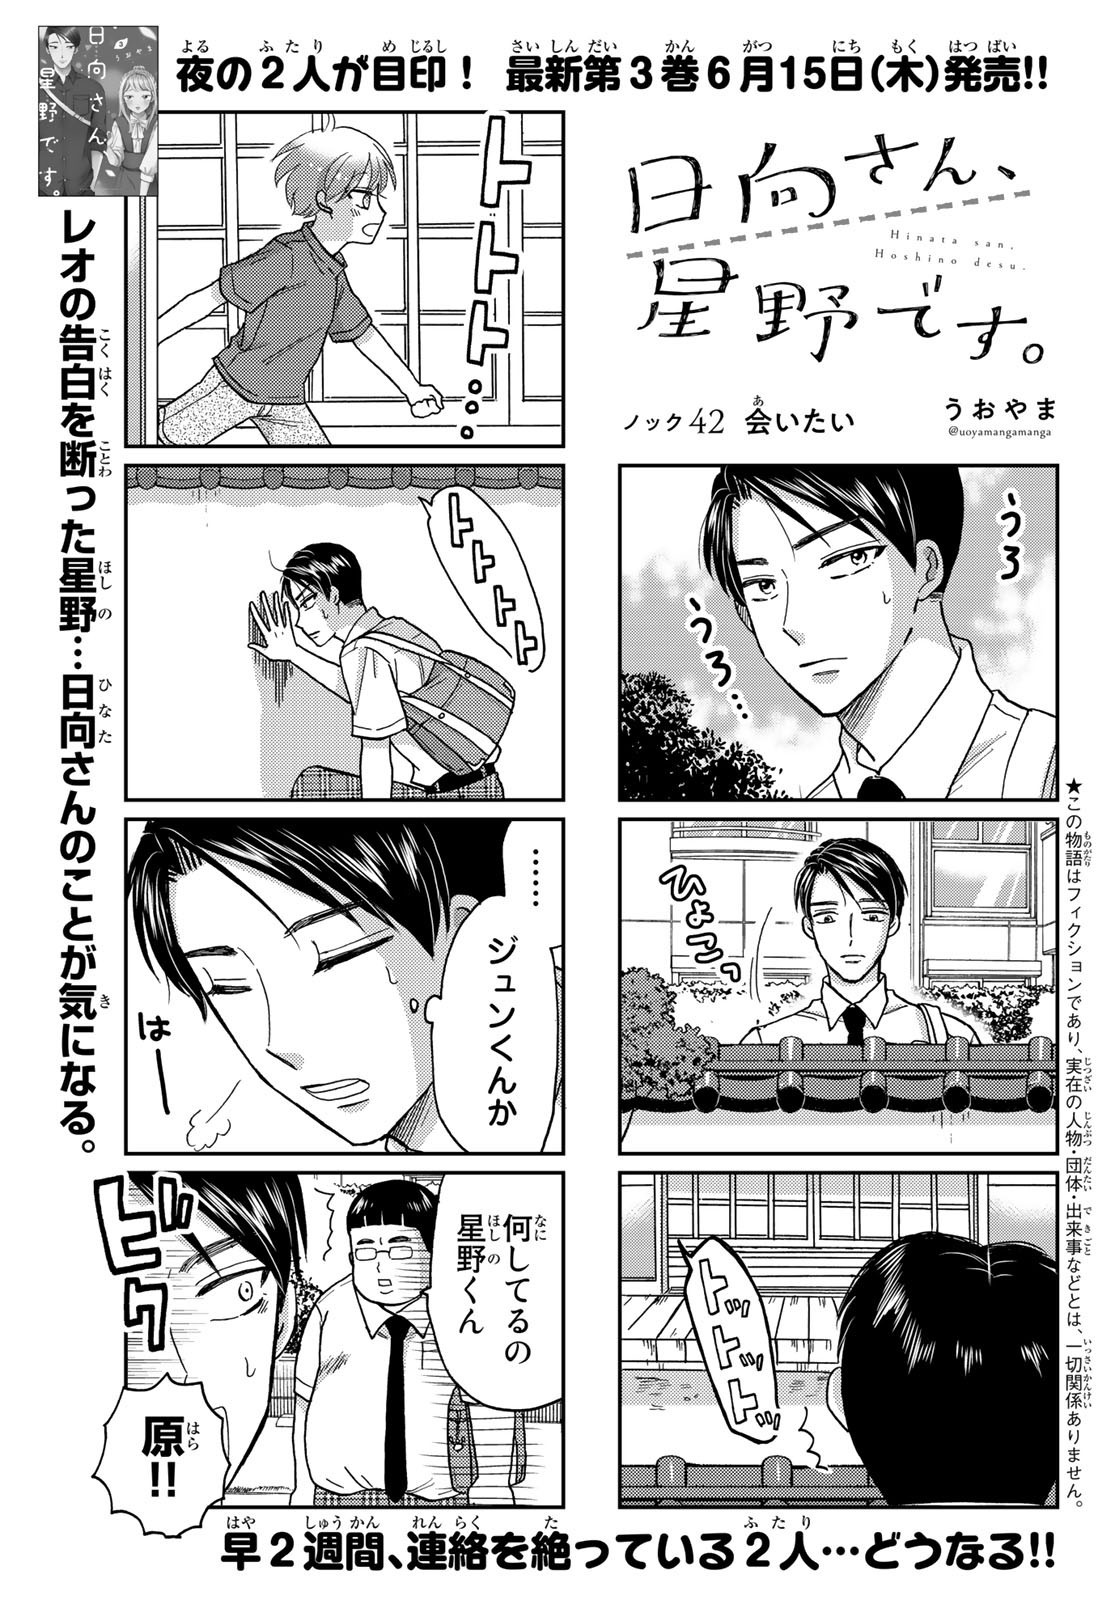 Hinata-san, Hoshino desu. - Chapter 042 - Page 1